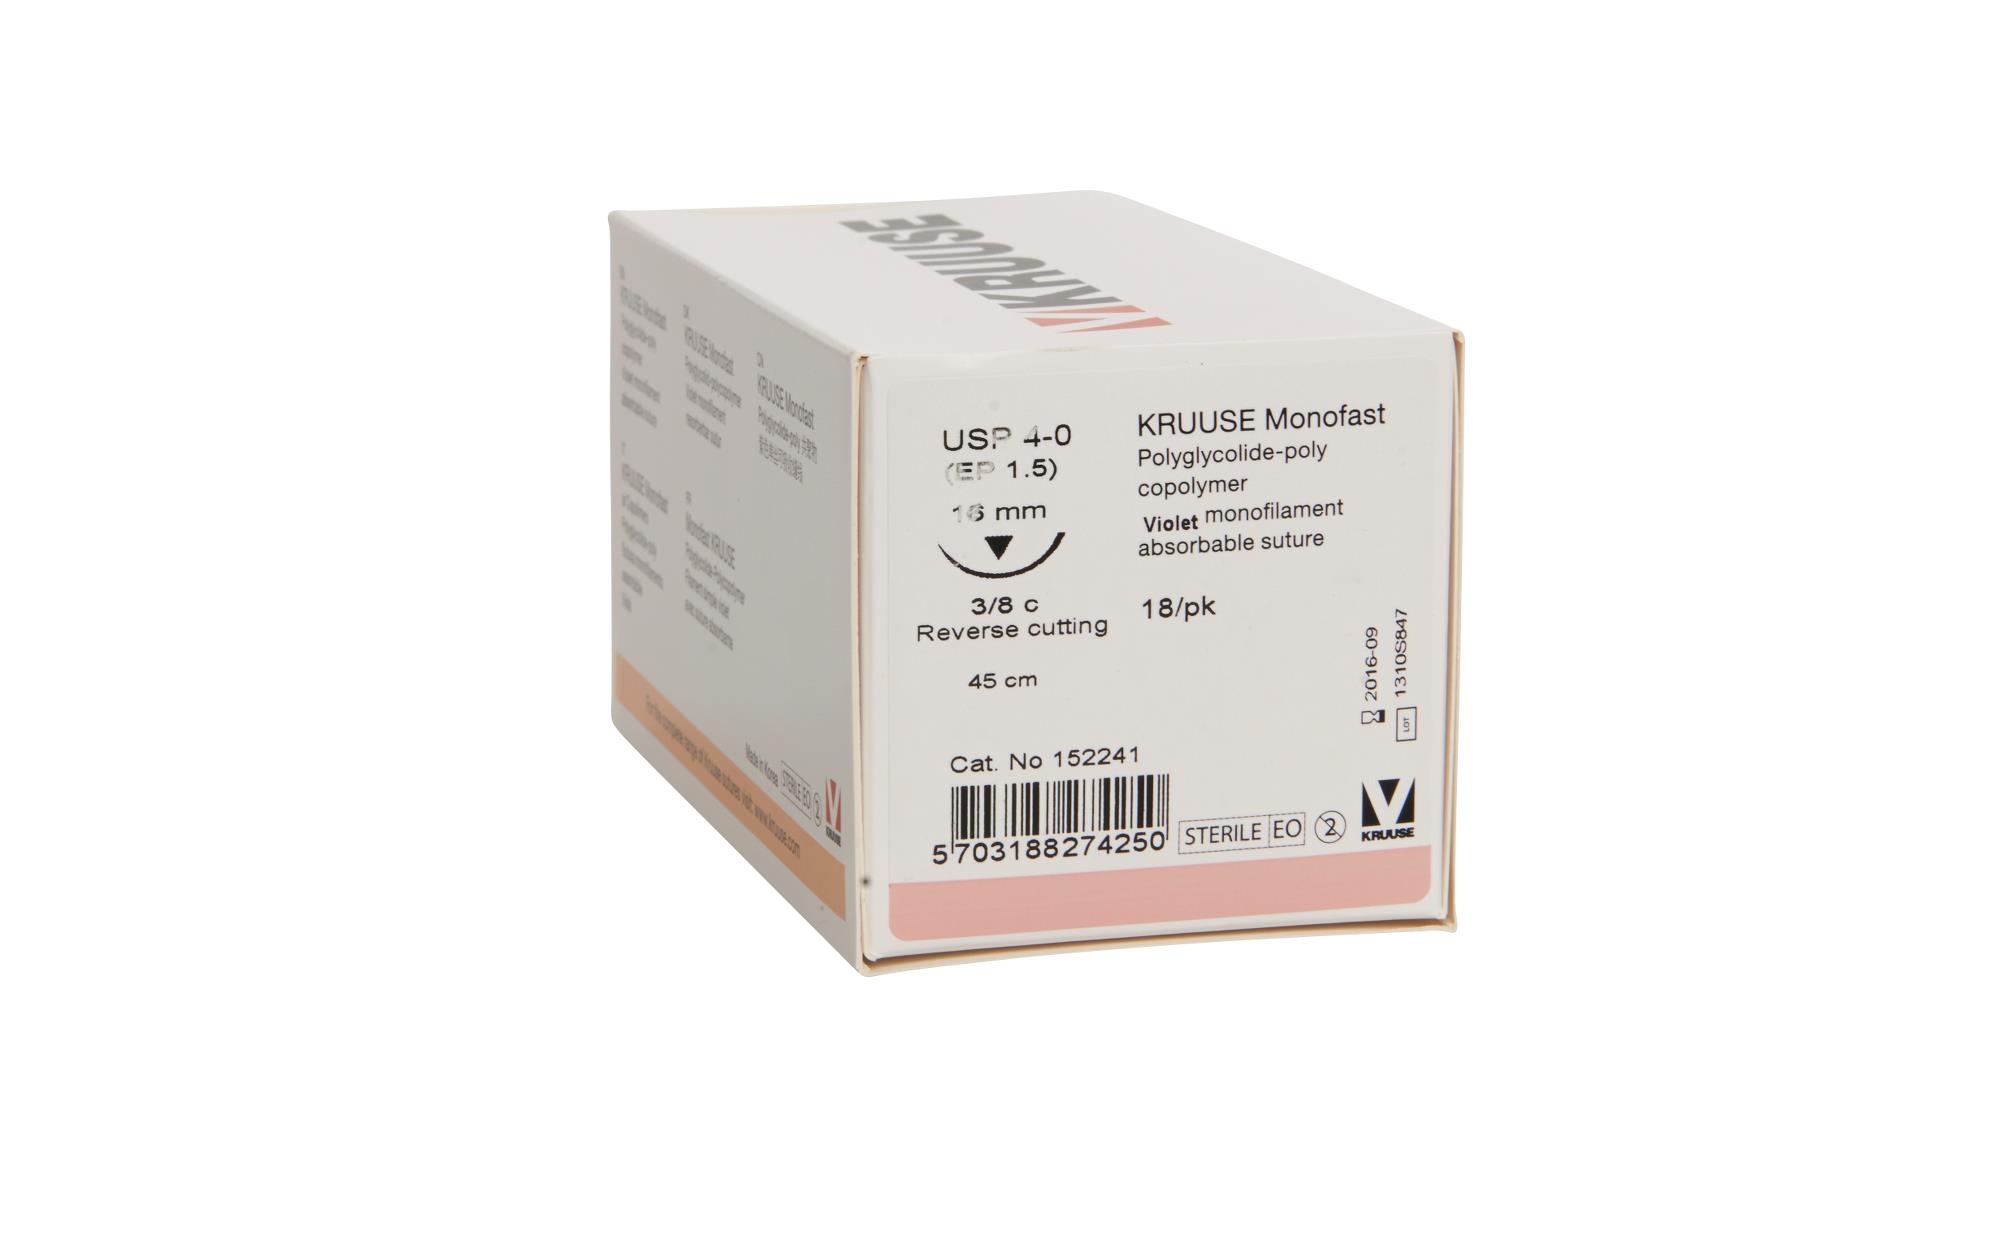 KRUUSE Monofast suture, USP 4-0, 45 cm, purple, 16 mm needle, 3/8 C, RC, 18/pk